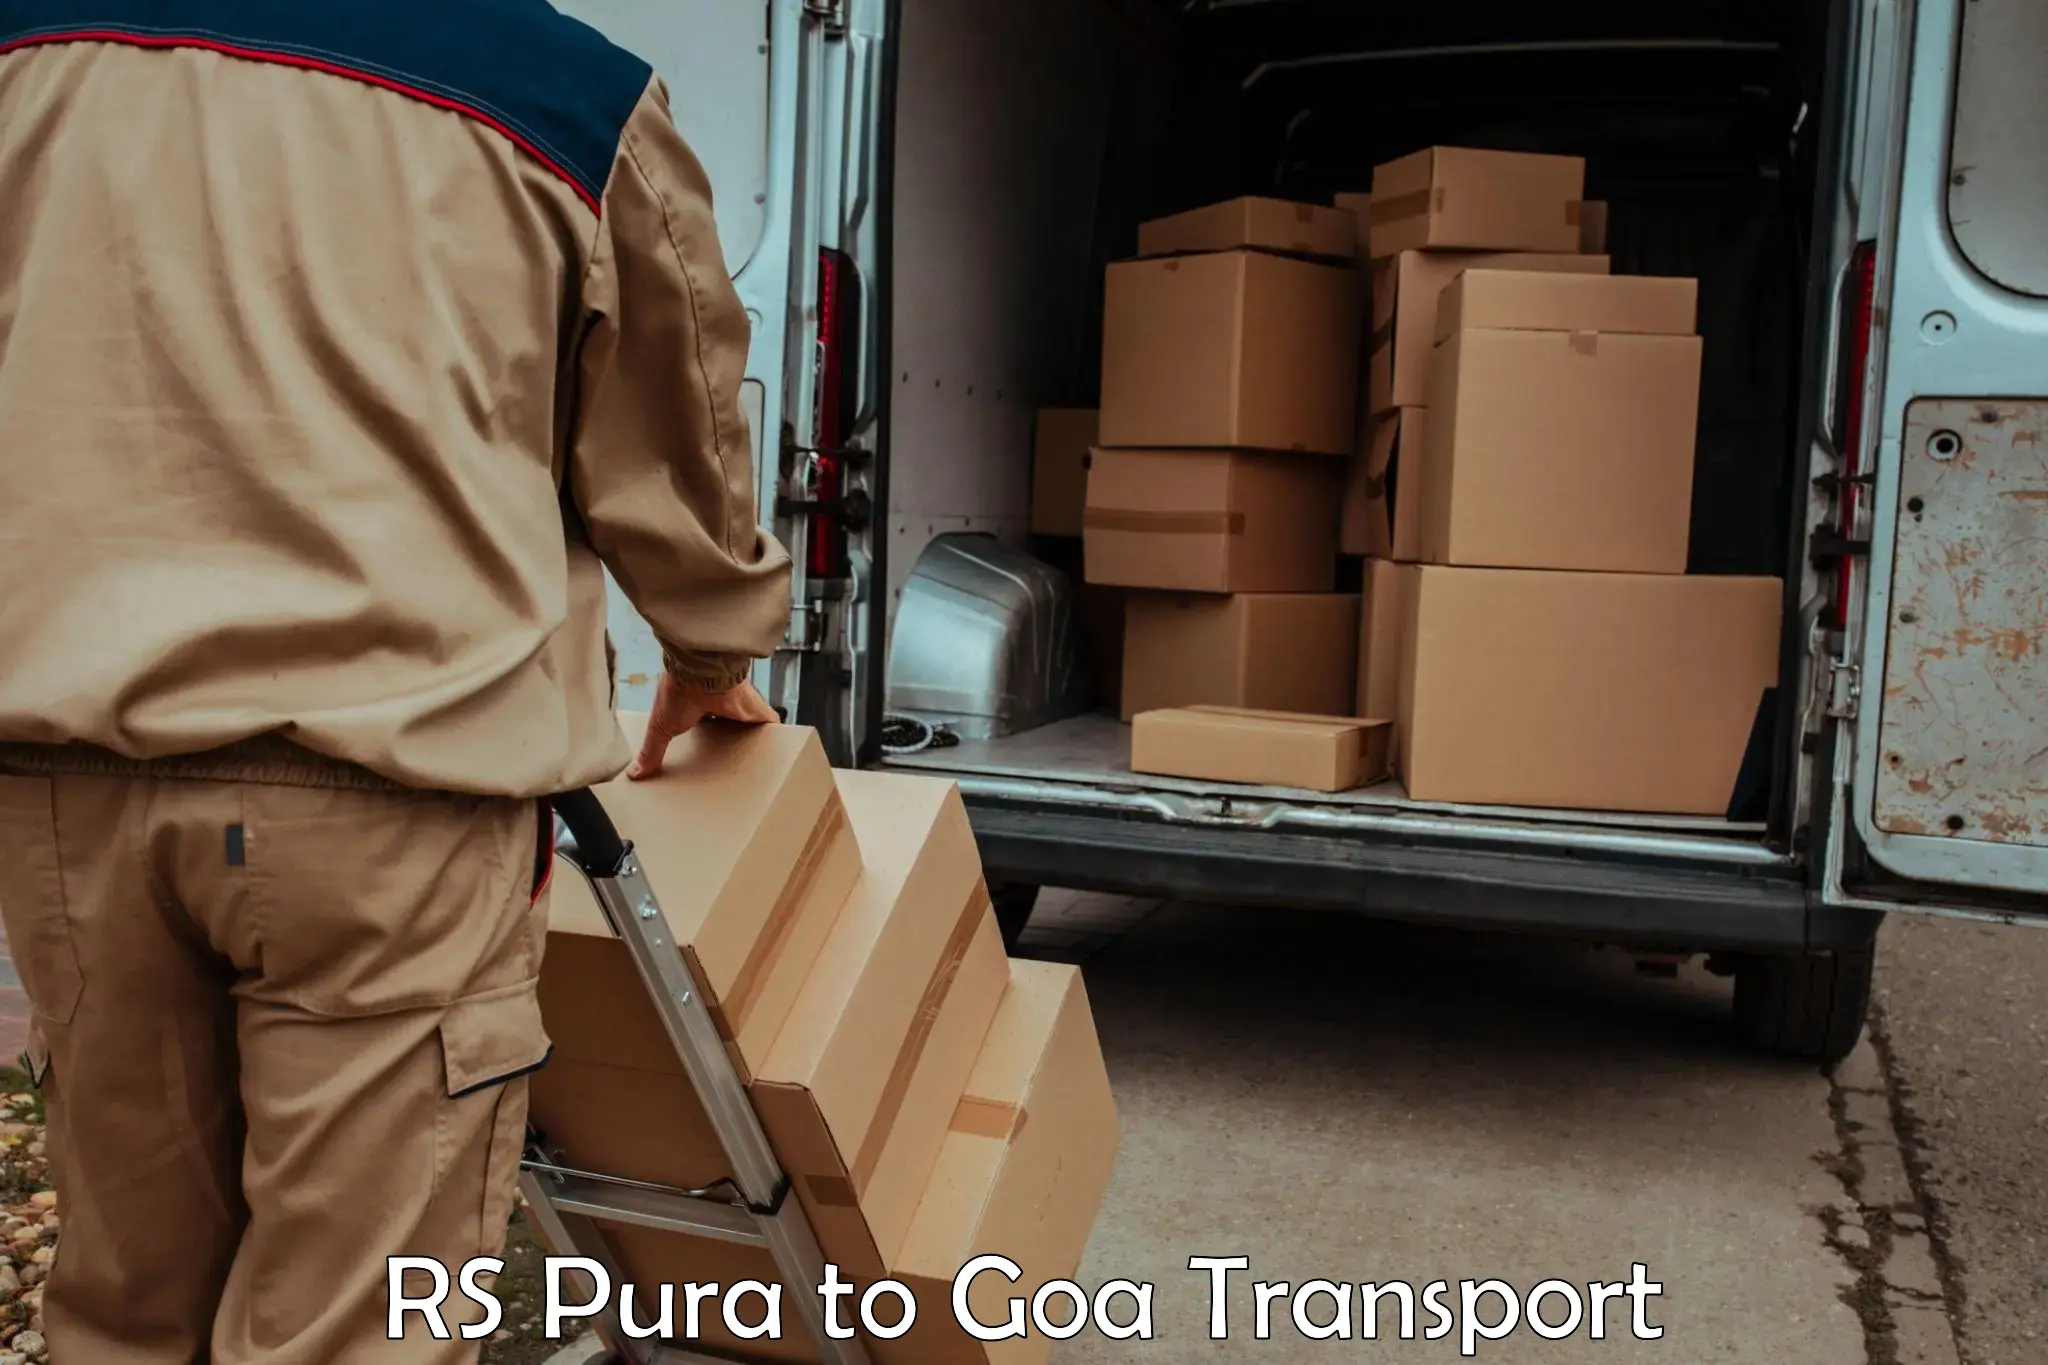 Pick up transport service RS Pura to Vasco da Gama